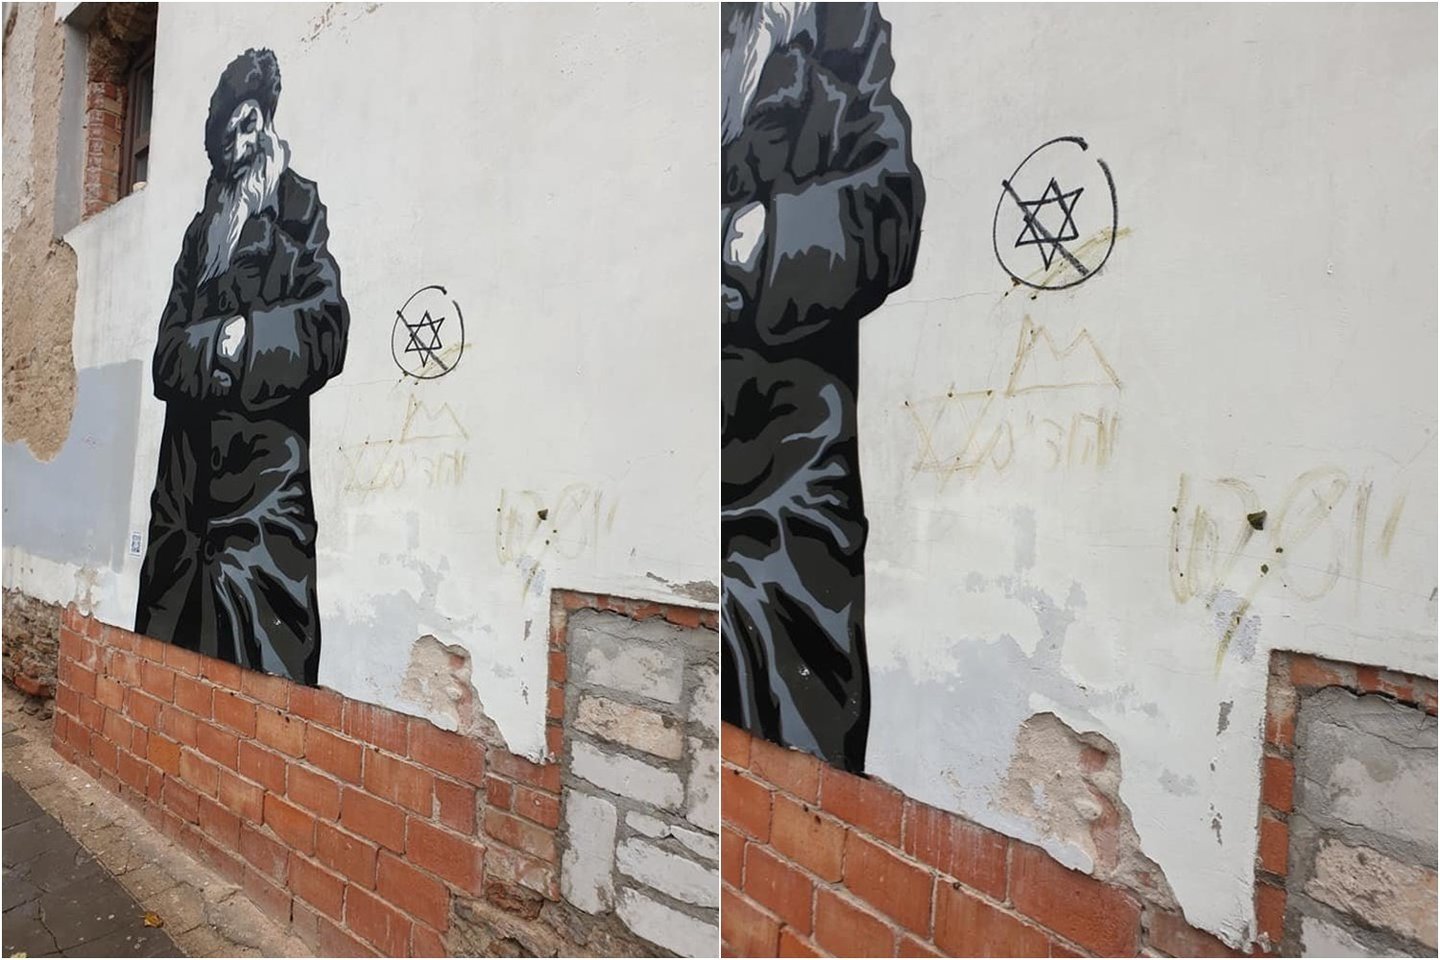  Dėl Vilniaus senamiestyje įvykdyto antisemitinio išpuolio policija pradėjo ikiteisminį tyrimą.<br> Facebook/Sienos prisimena / Walls that remember nuotr.